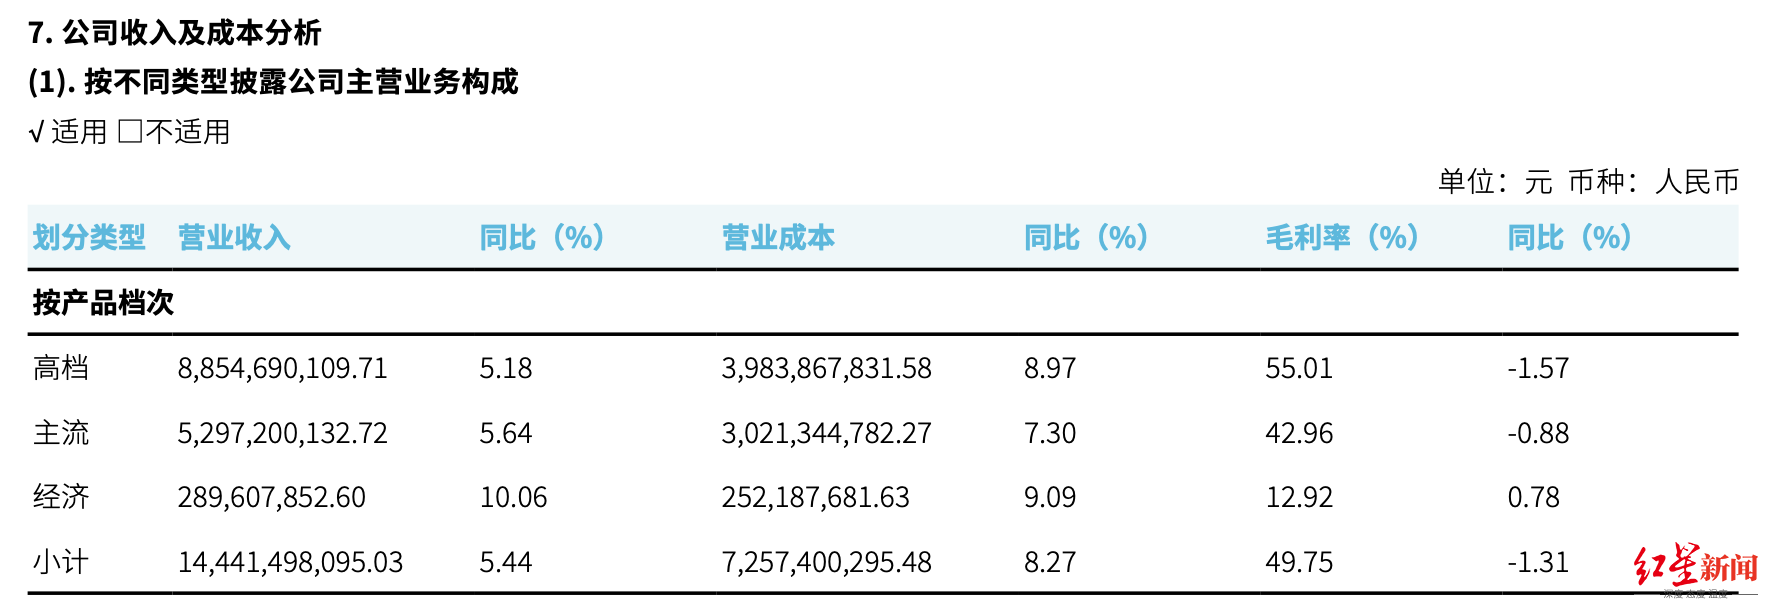 重慶啤酒高端化戰略一年后 4元以下產品營收增幅最大 高檔產品增幅最差